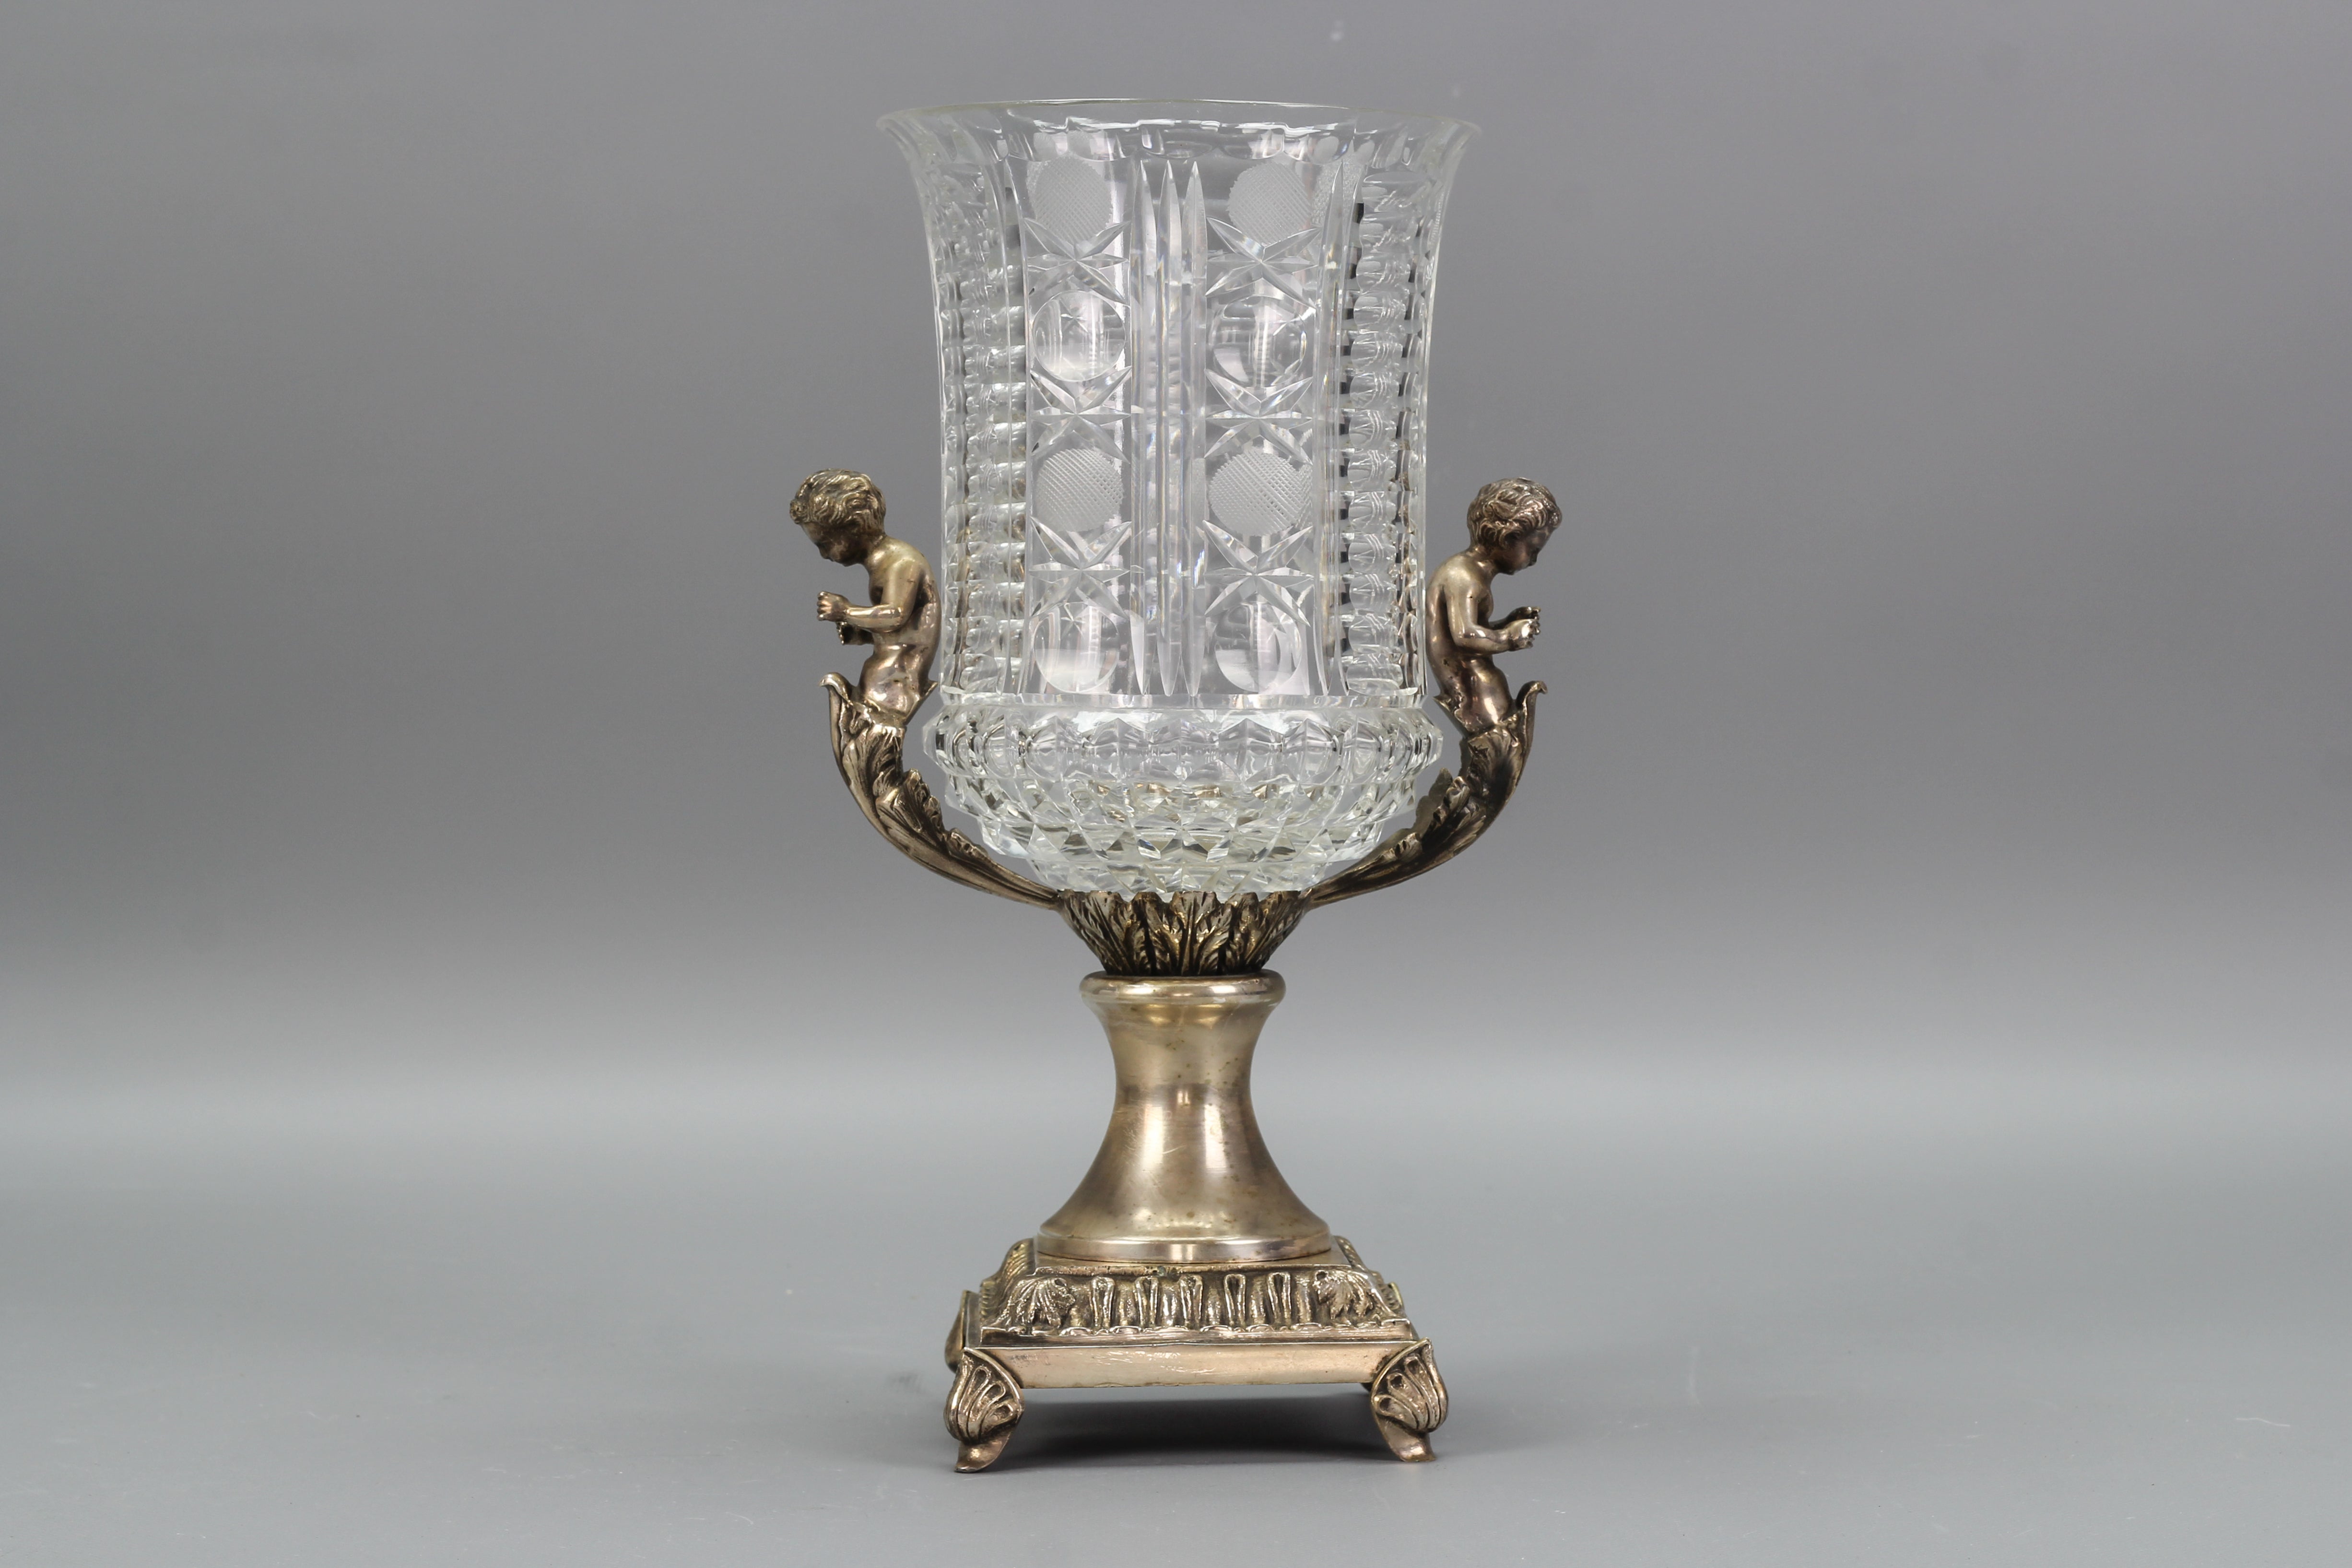 Vase aus tschechischem Kristallglas und Messing mit Putten, ca. 1970er Jahre.
Diese schöne Vase im viktorianischen Stil besteht aus klarem, geschliffenem Kristallglas, das auf Messingfüßen steht und von Putten mit Blattdekor geschmückt